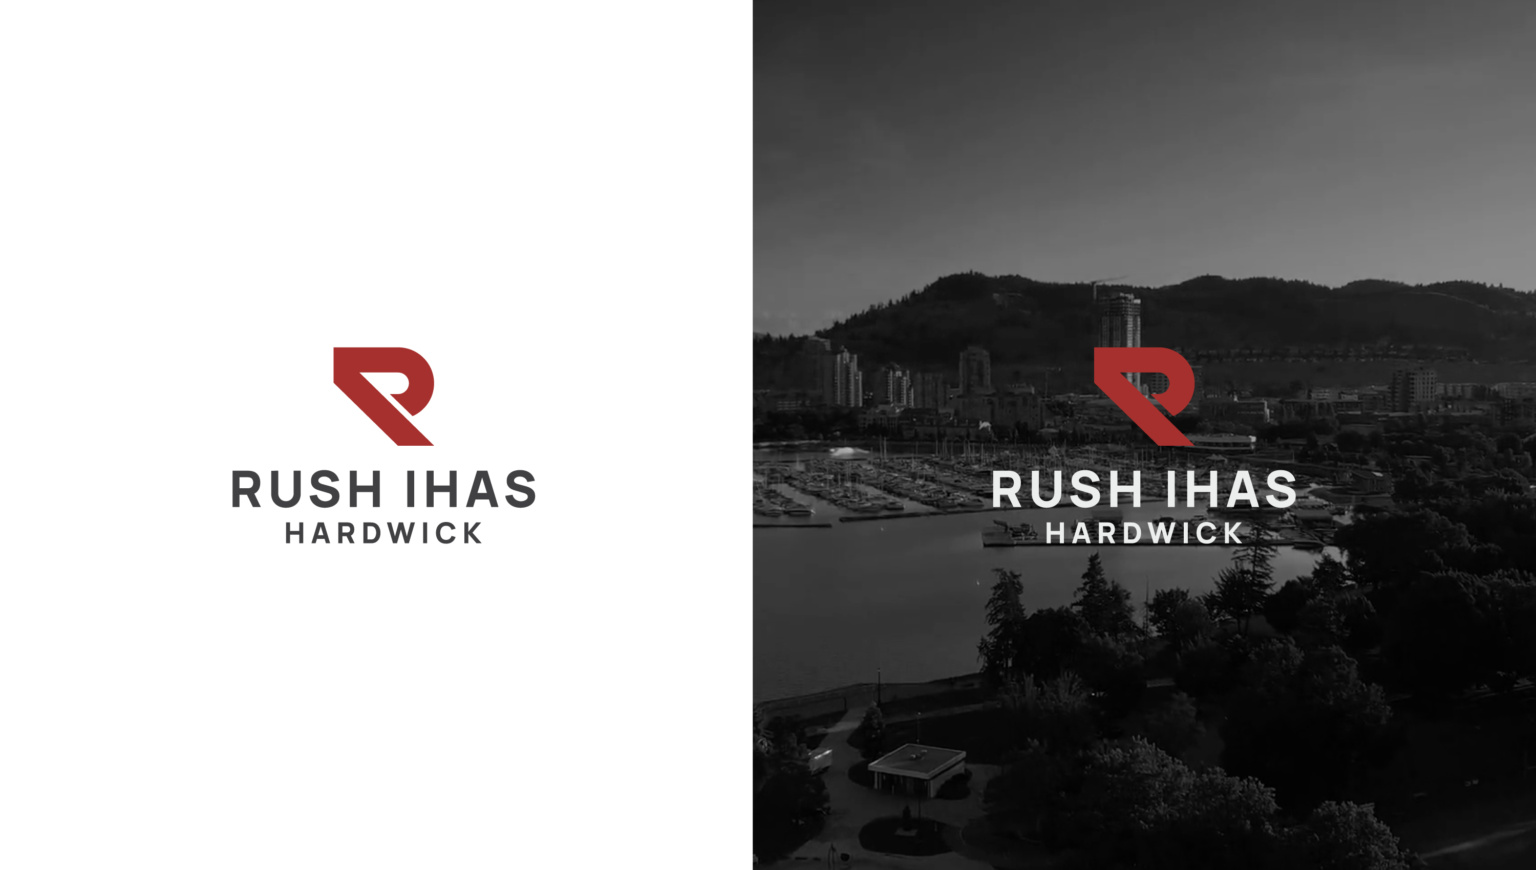 Rush Ihas logo redesigned